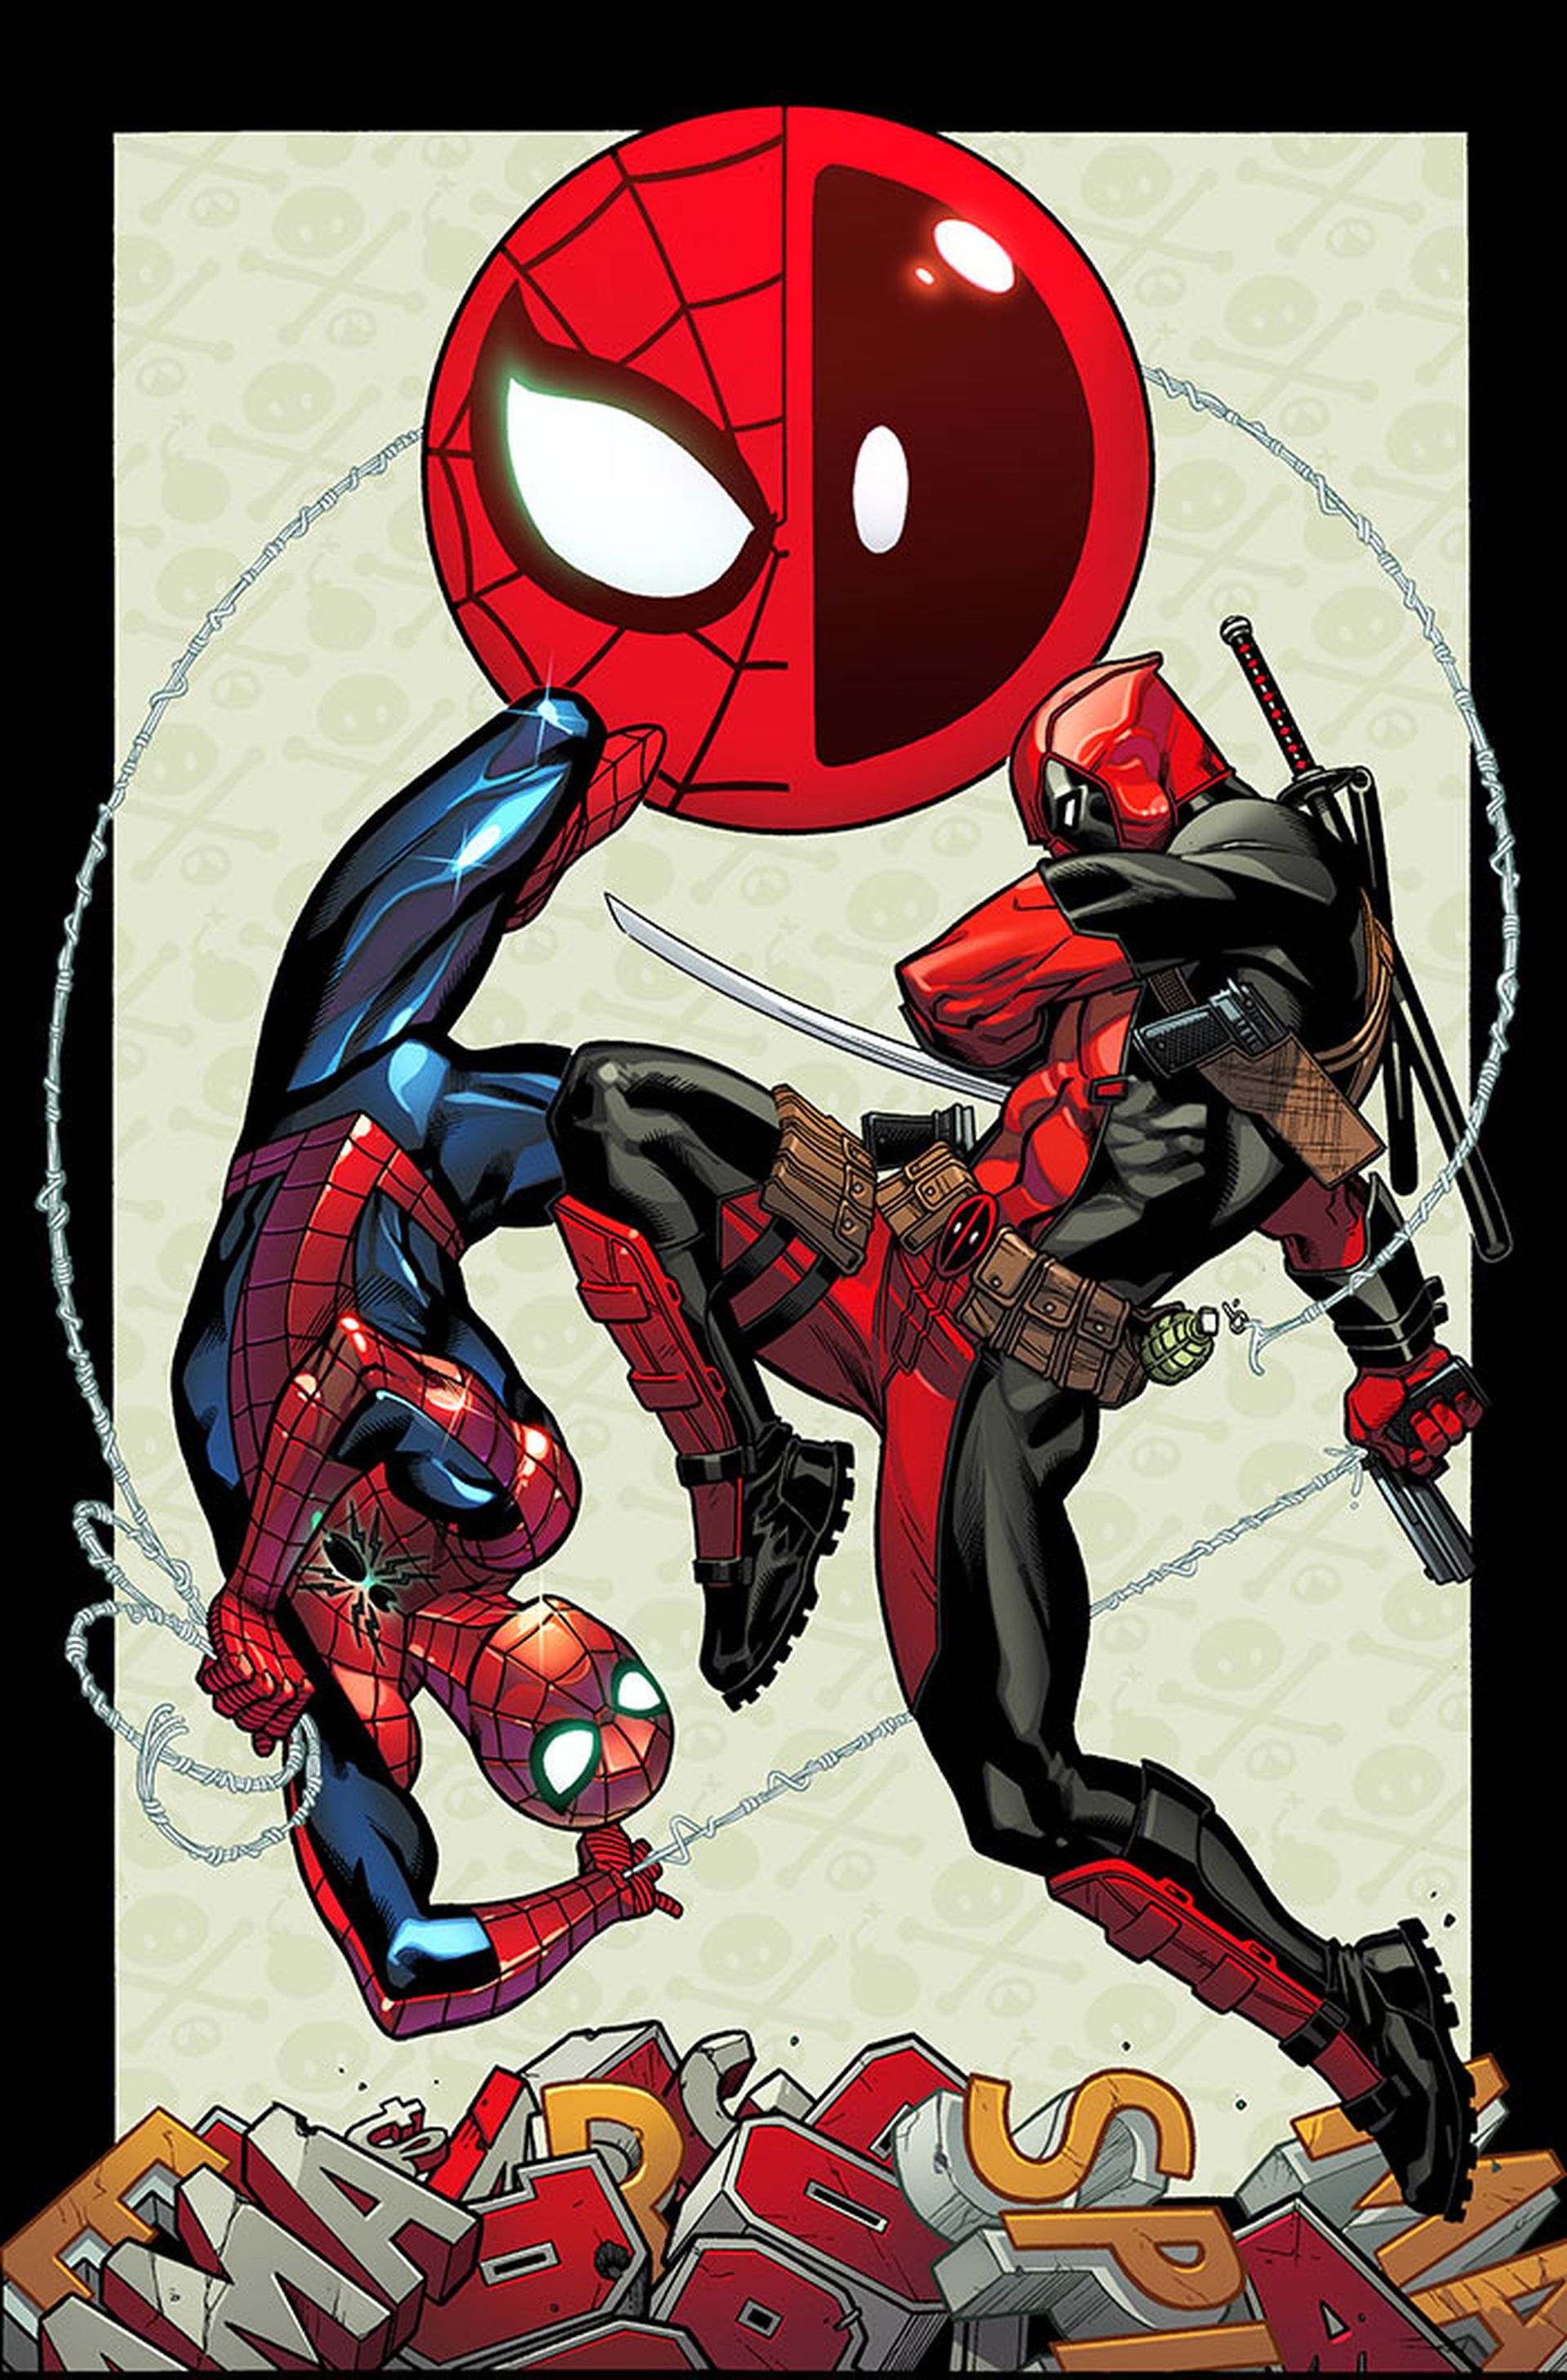 Spider-man y Masacre (Deadpool) tendrán serie conjunta de cómic